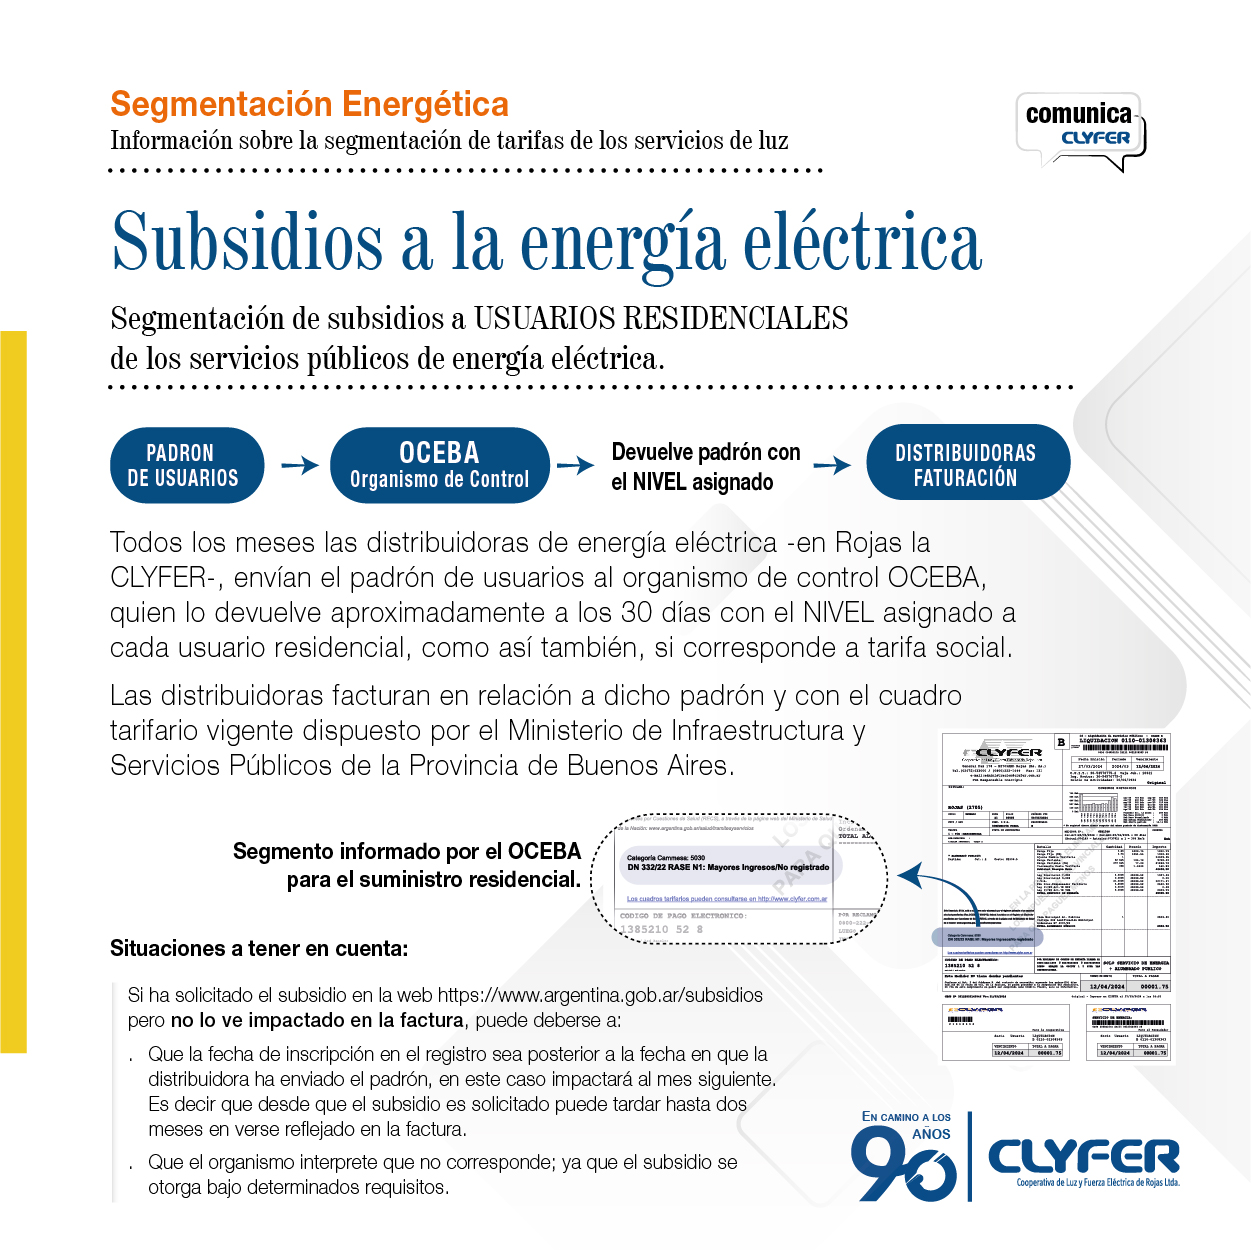 Segmentación - Subsidios a la energía eléctrica